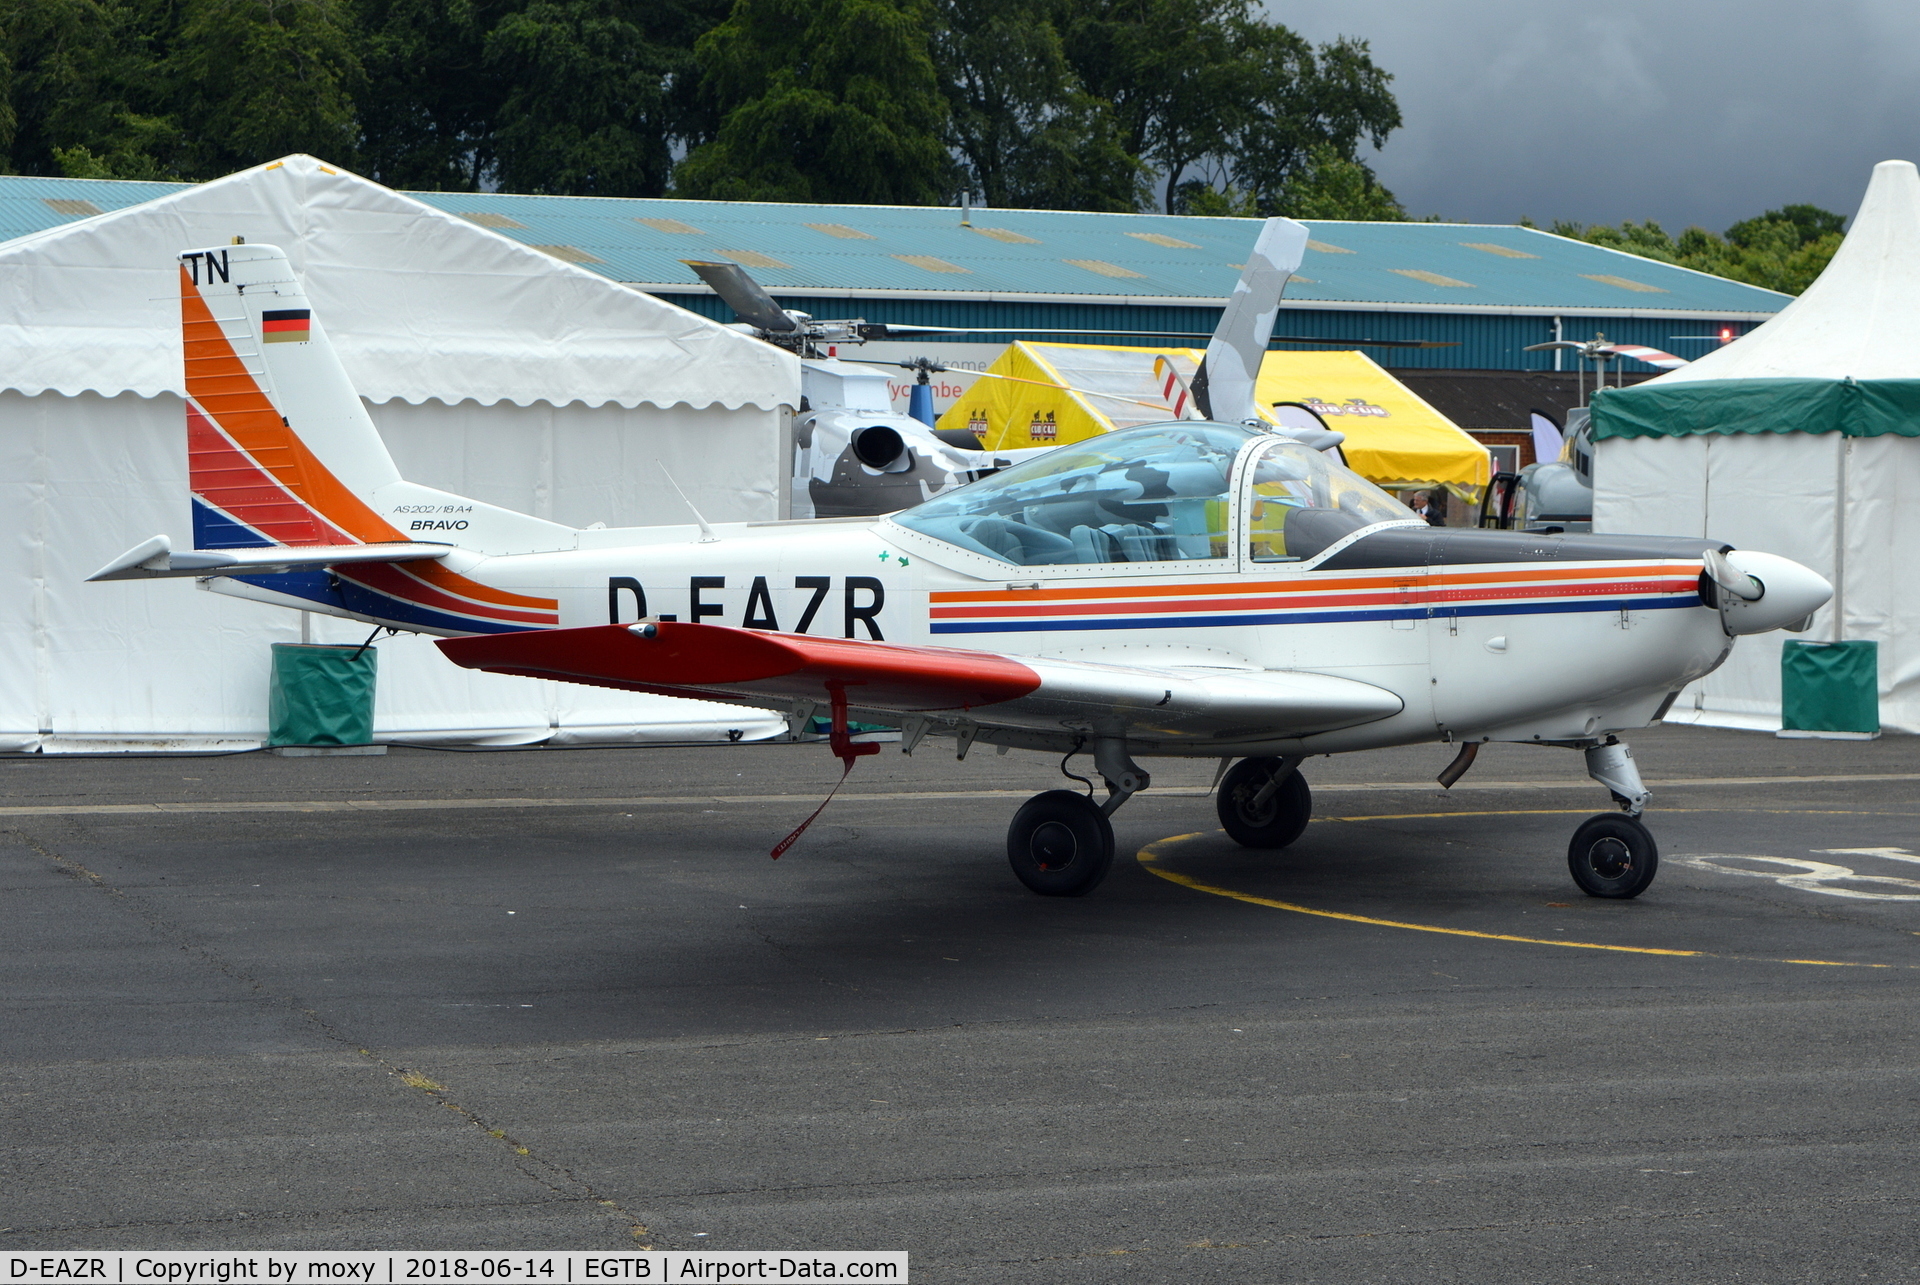 D-EAZR, 1988 FFA AS-202/18A-4 Bravo C/N 233, FFA AS-202/18A-4 Bravo at Wycombe Air Park.